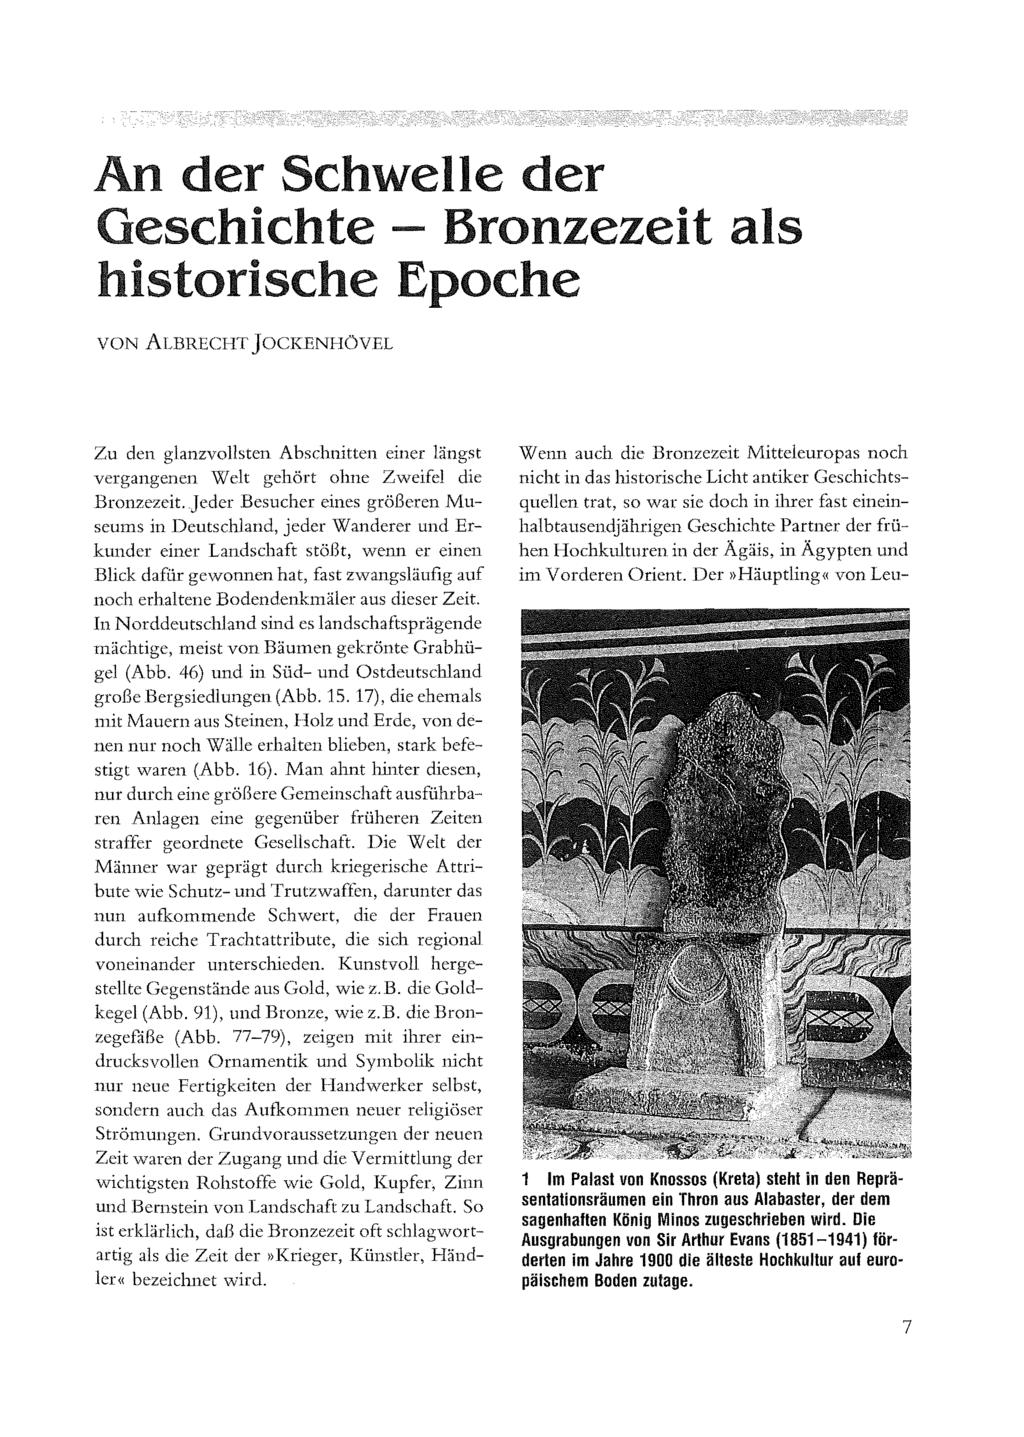 An der Schwelle der Geschichte -- Bronzezeit als historische Epoche VON ALBRECHT JOCKENHÖVEL Zu den glanzvollsten Abschnitten einer längst vergangenen Welt gehört ohne Zweifel die Bronzezeit.